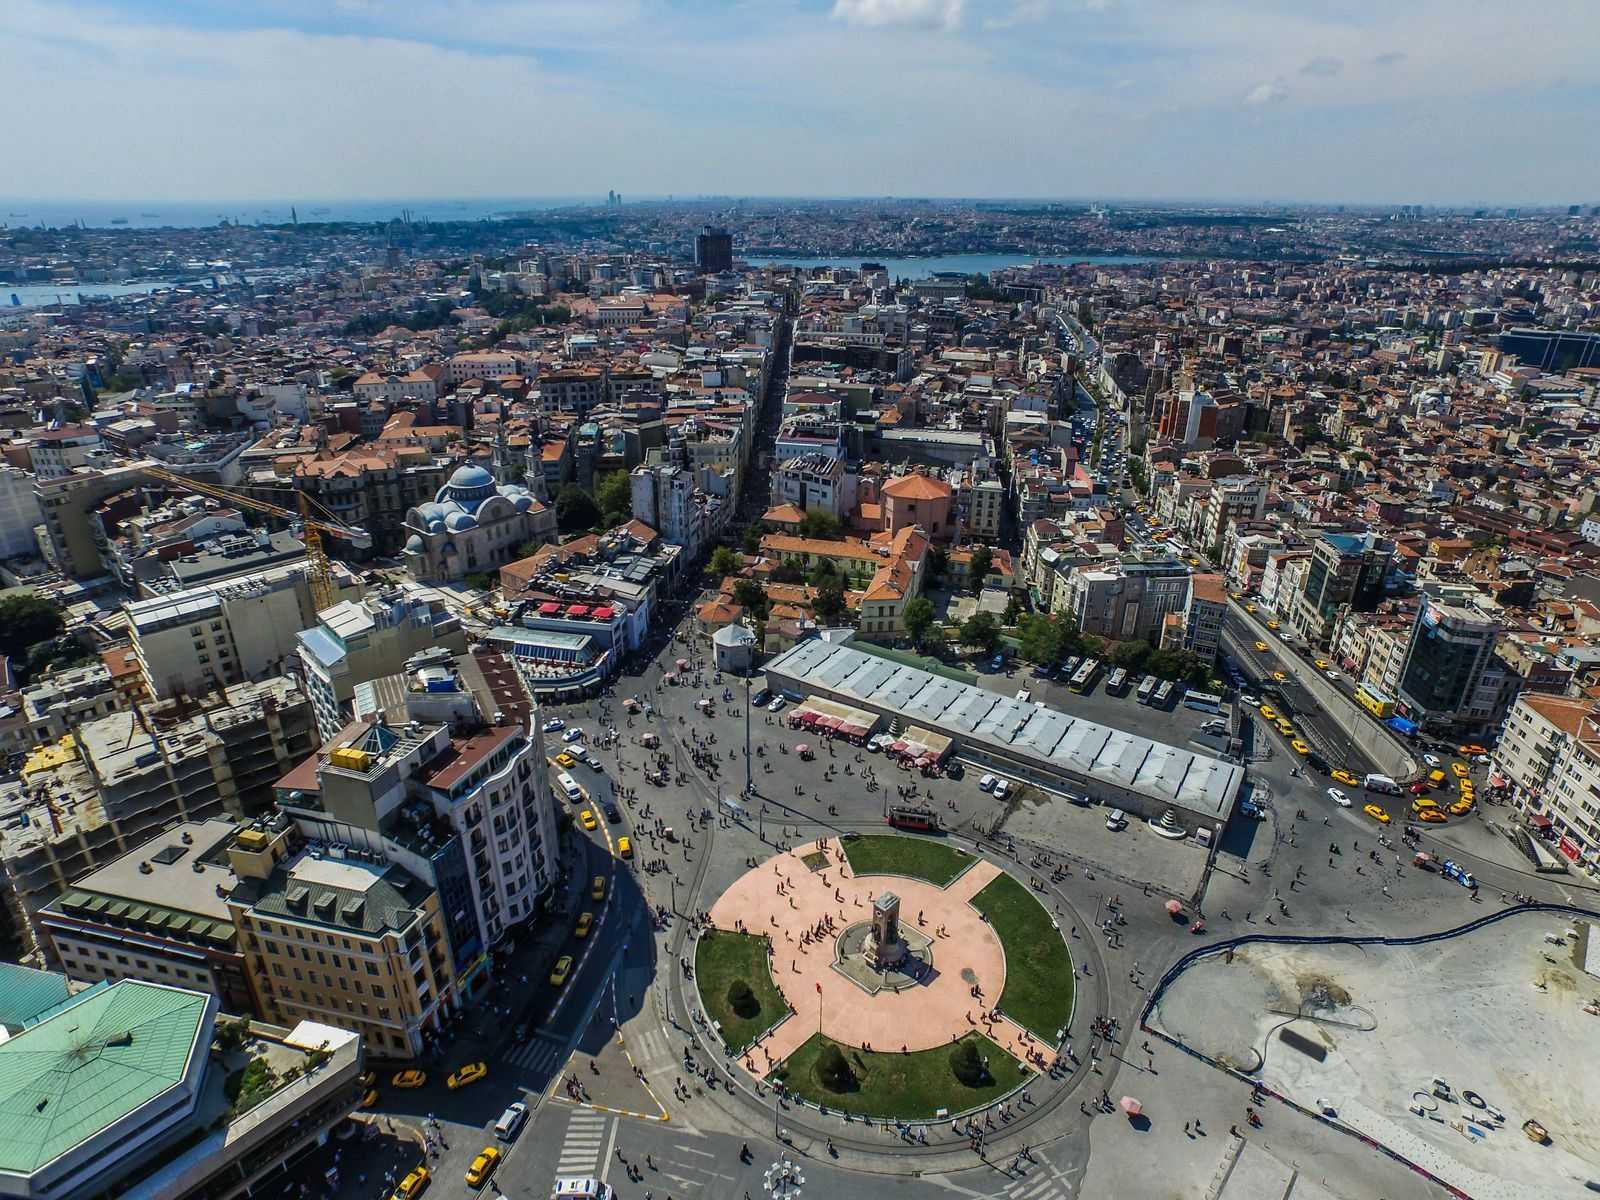 Площади Таксим и Султанахмет Ипподром - две крупные и главные площади Стамбула, который являются центром города с обилием значимых достопримечательностей